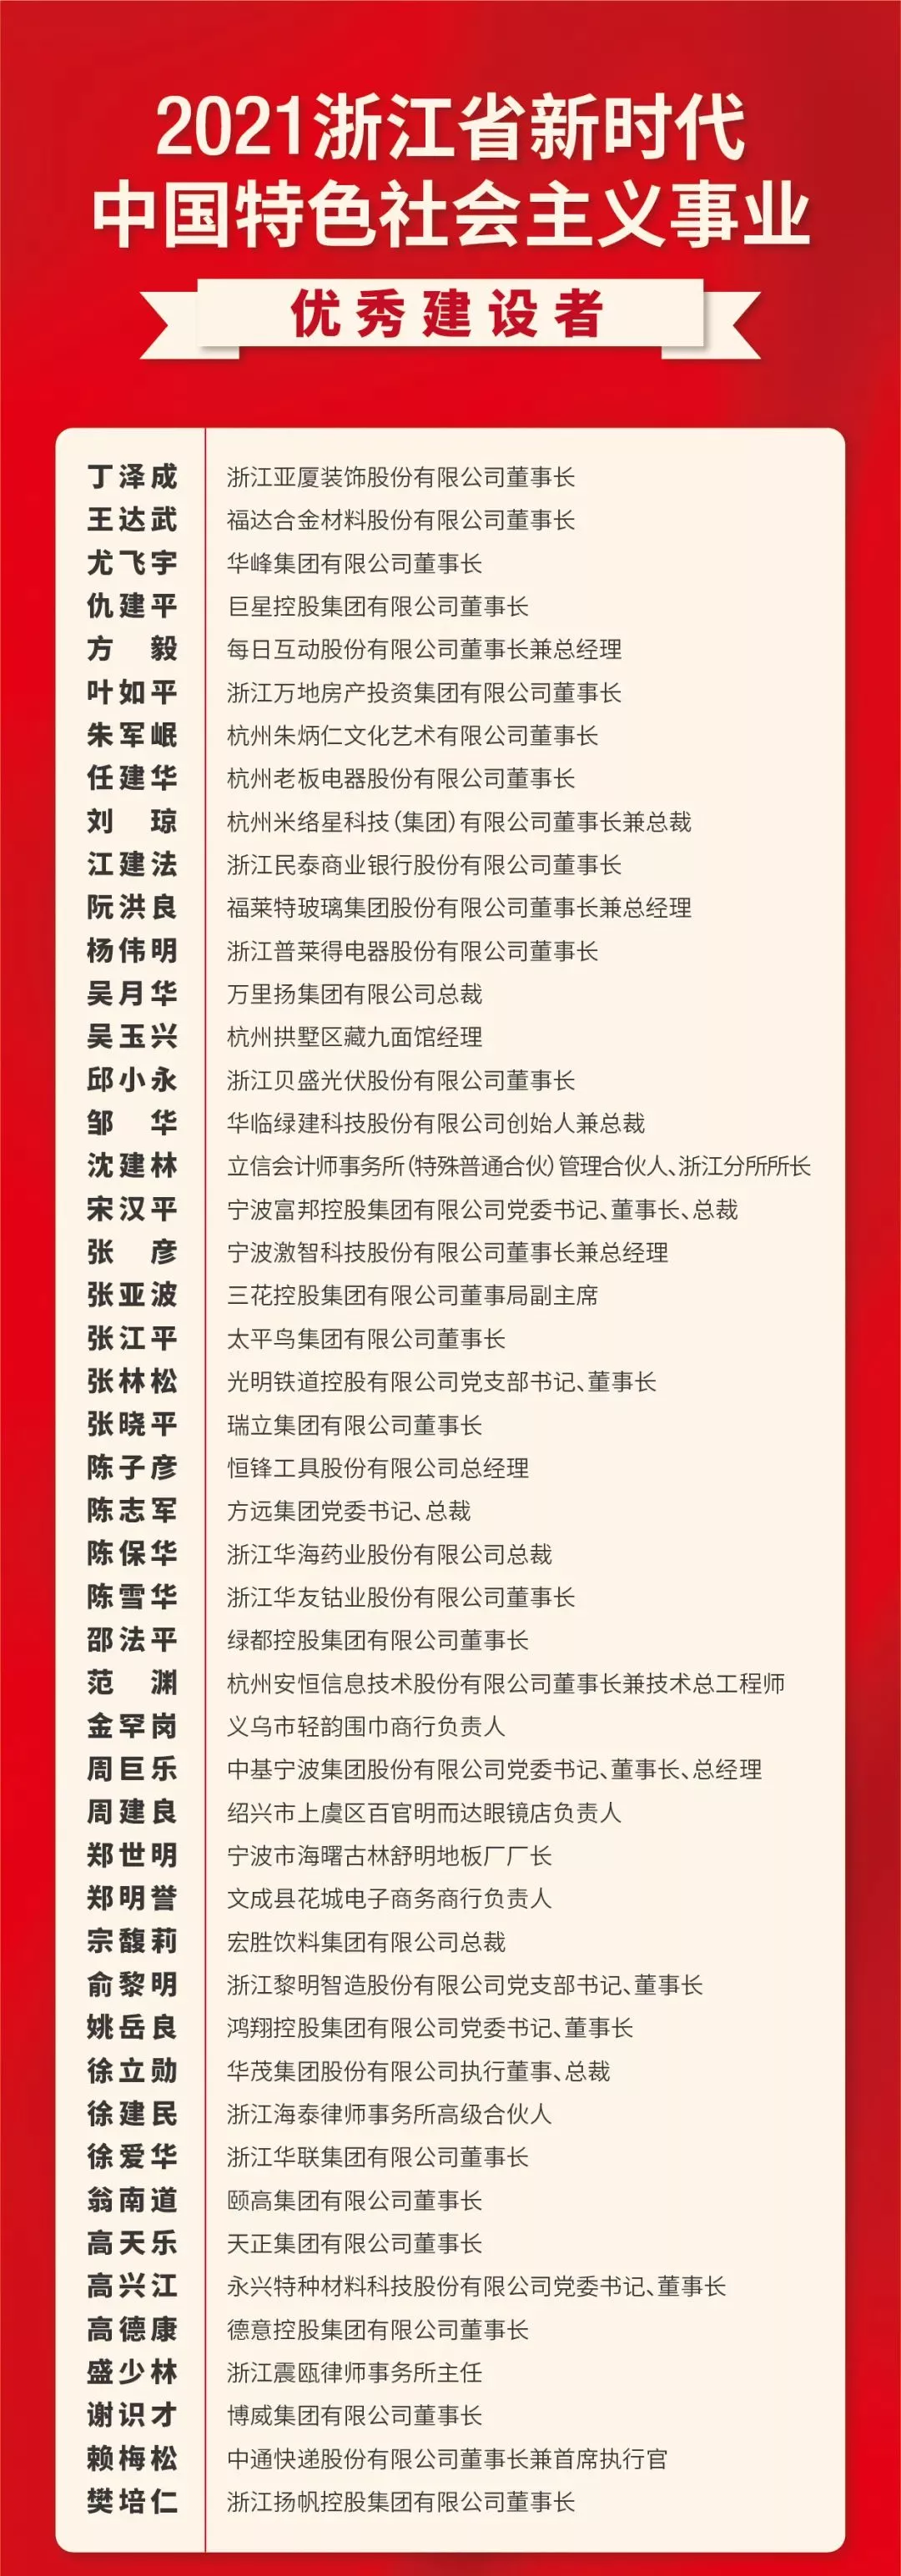 浙江省民營經濟發展大會 高天樂等企業家榮獲“優秀建設者”榮譽